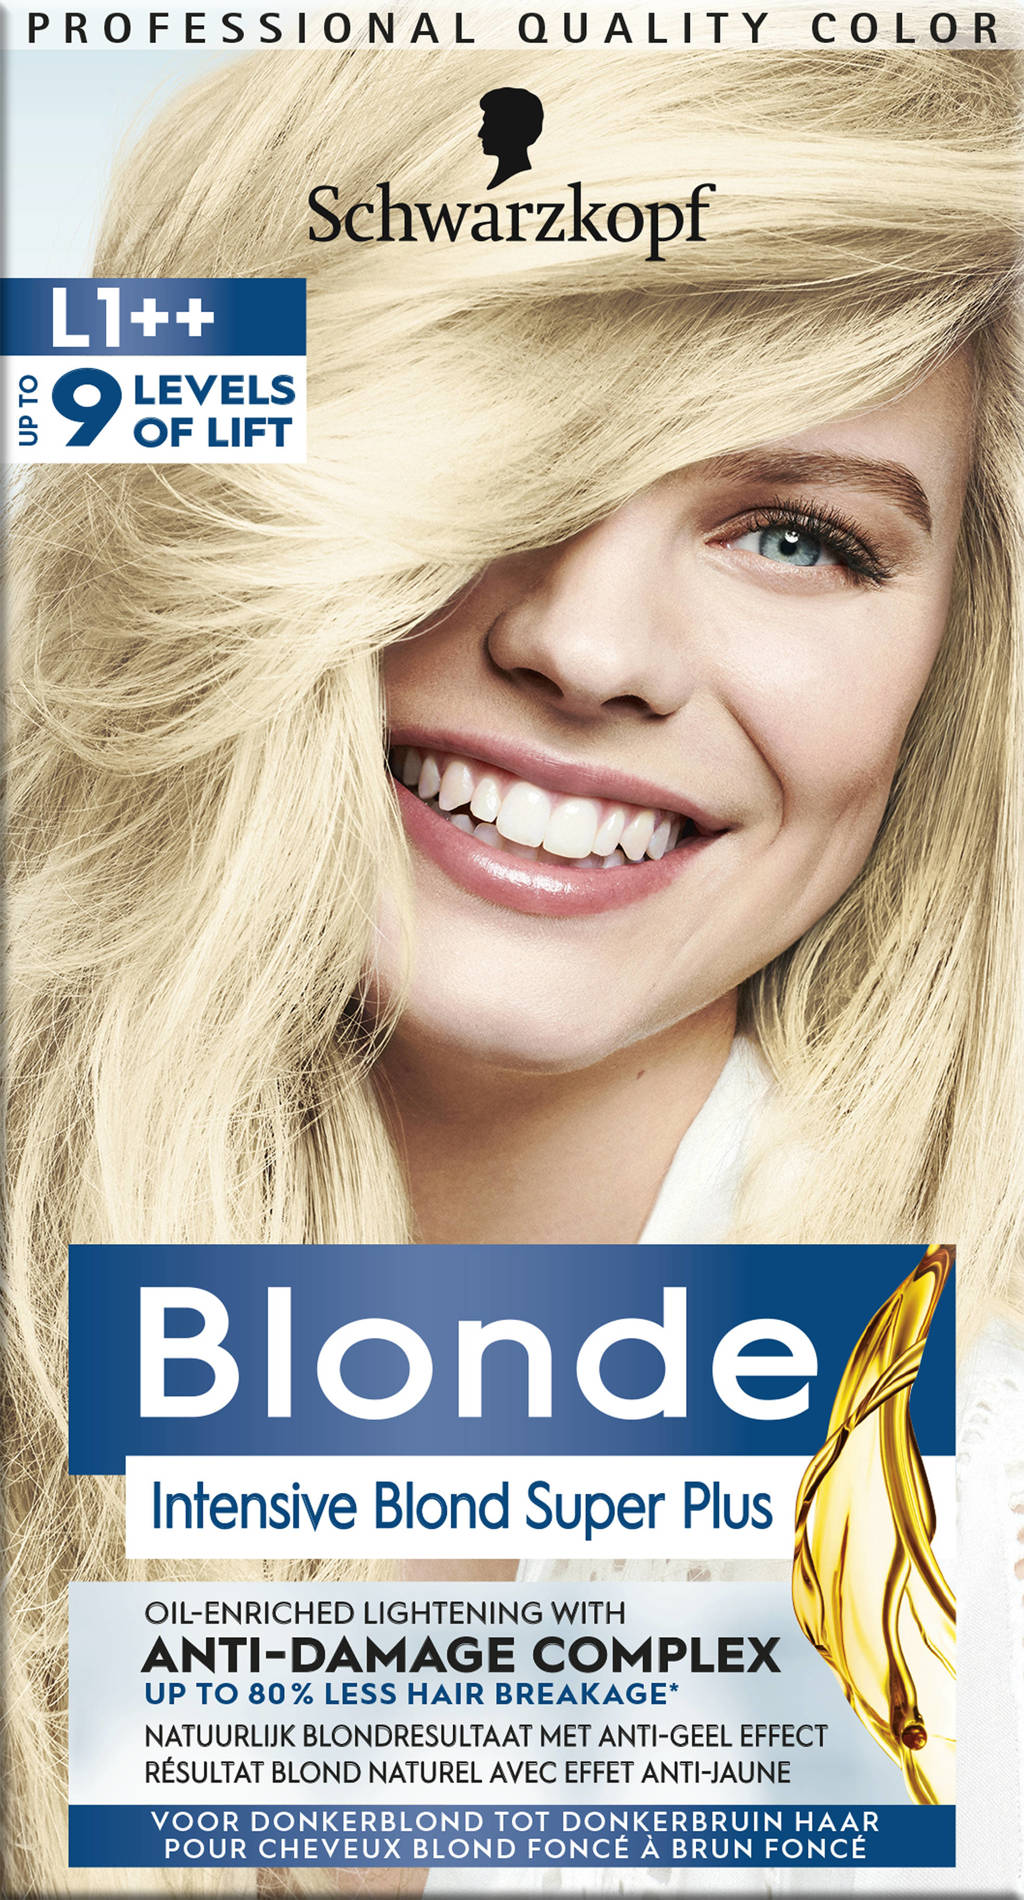 Schwarzkopf Blonde - Intensive Blond Super Plus